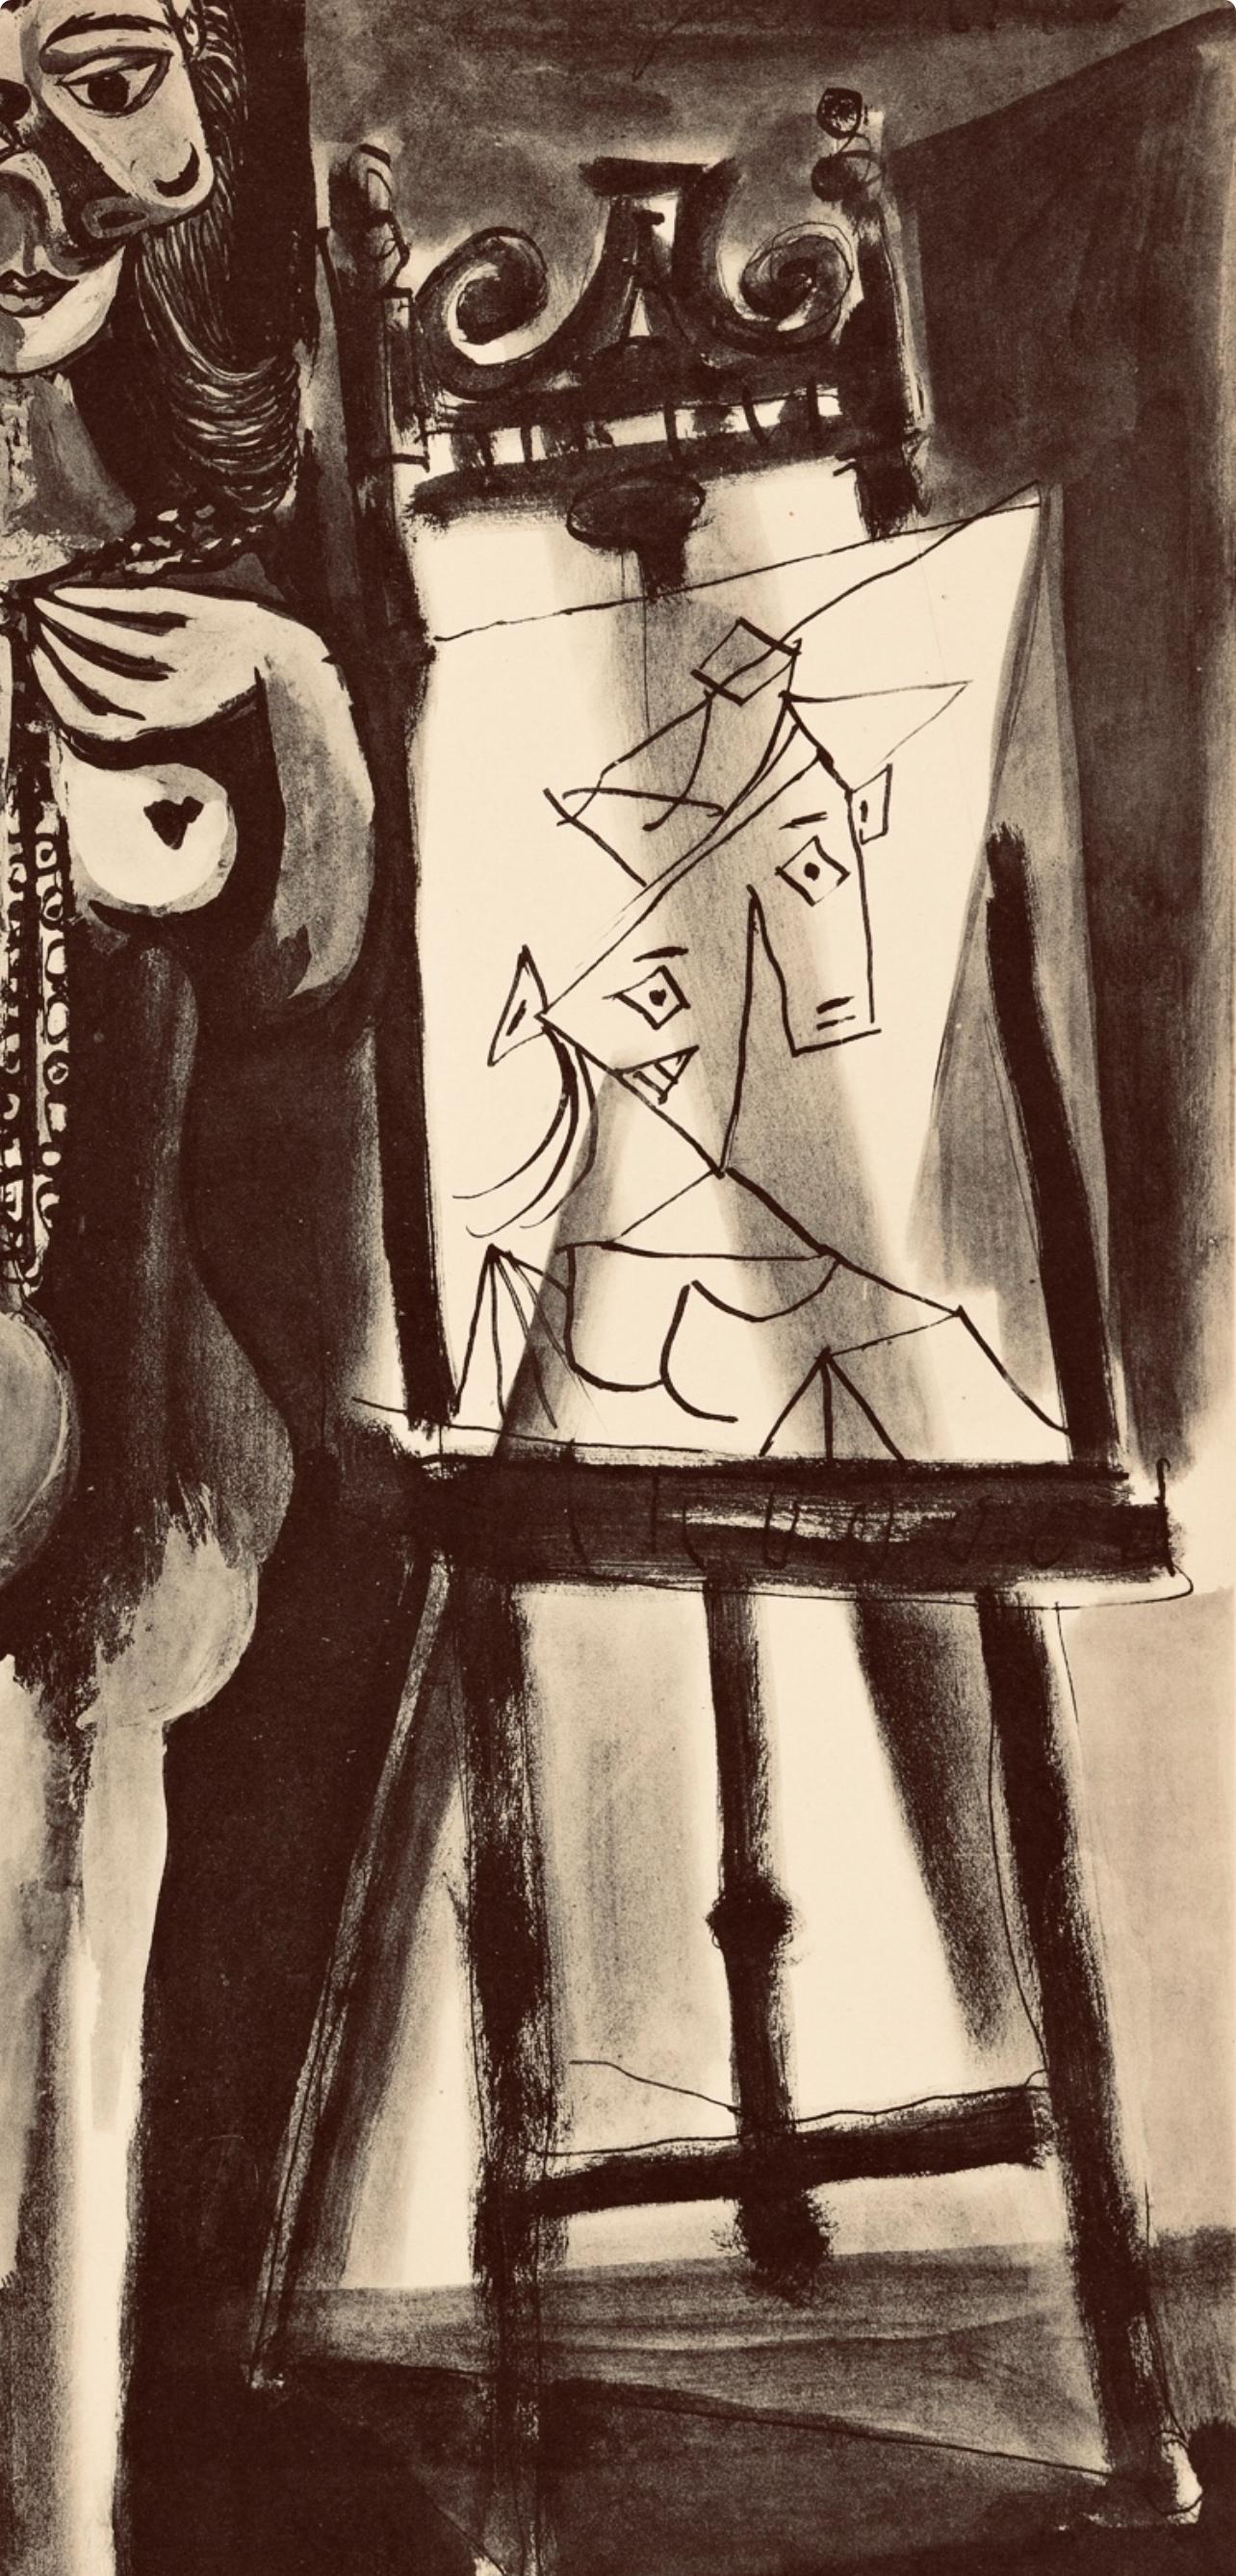 Picasso, Composition, Carnet de dessins de Picasso, Cahiers d’Art (after) - Cubist Print by Pablo Picasso